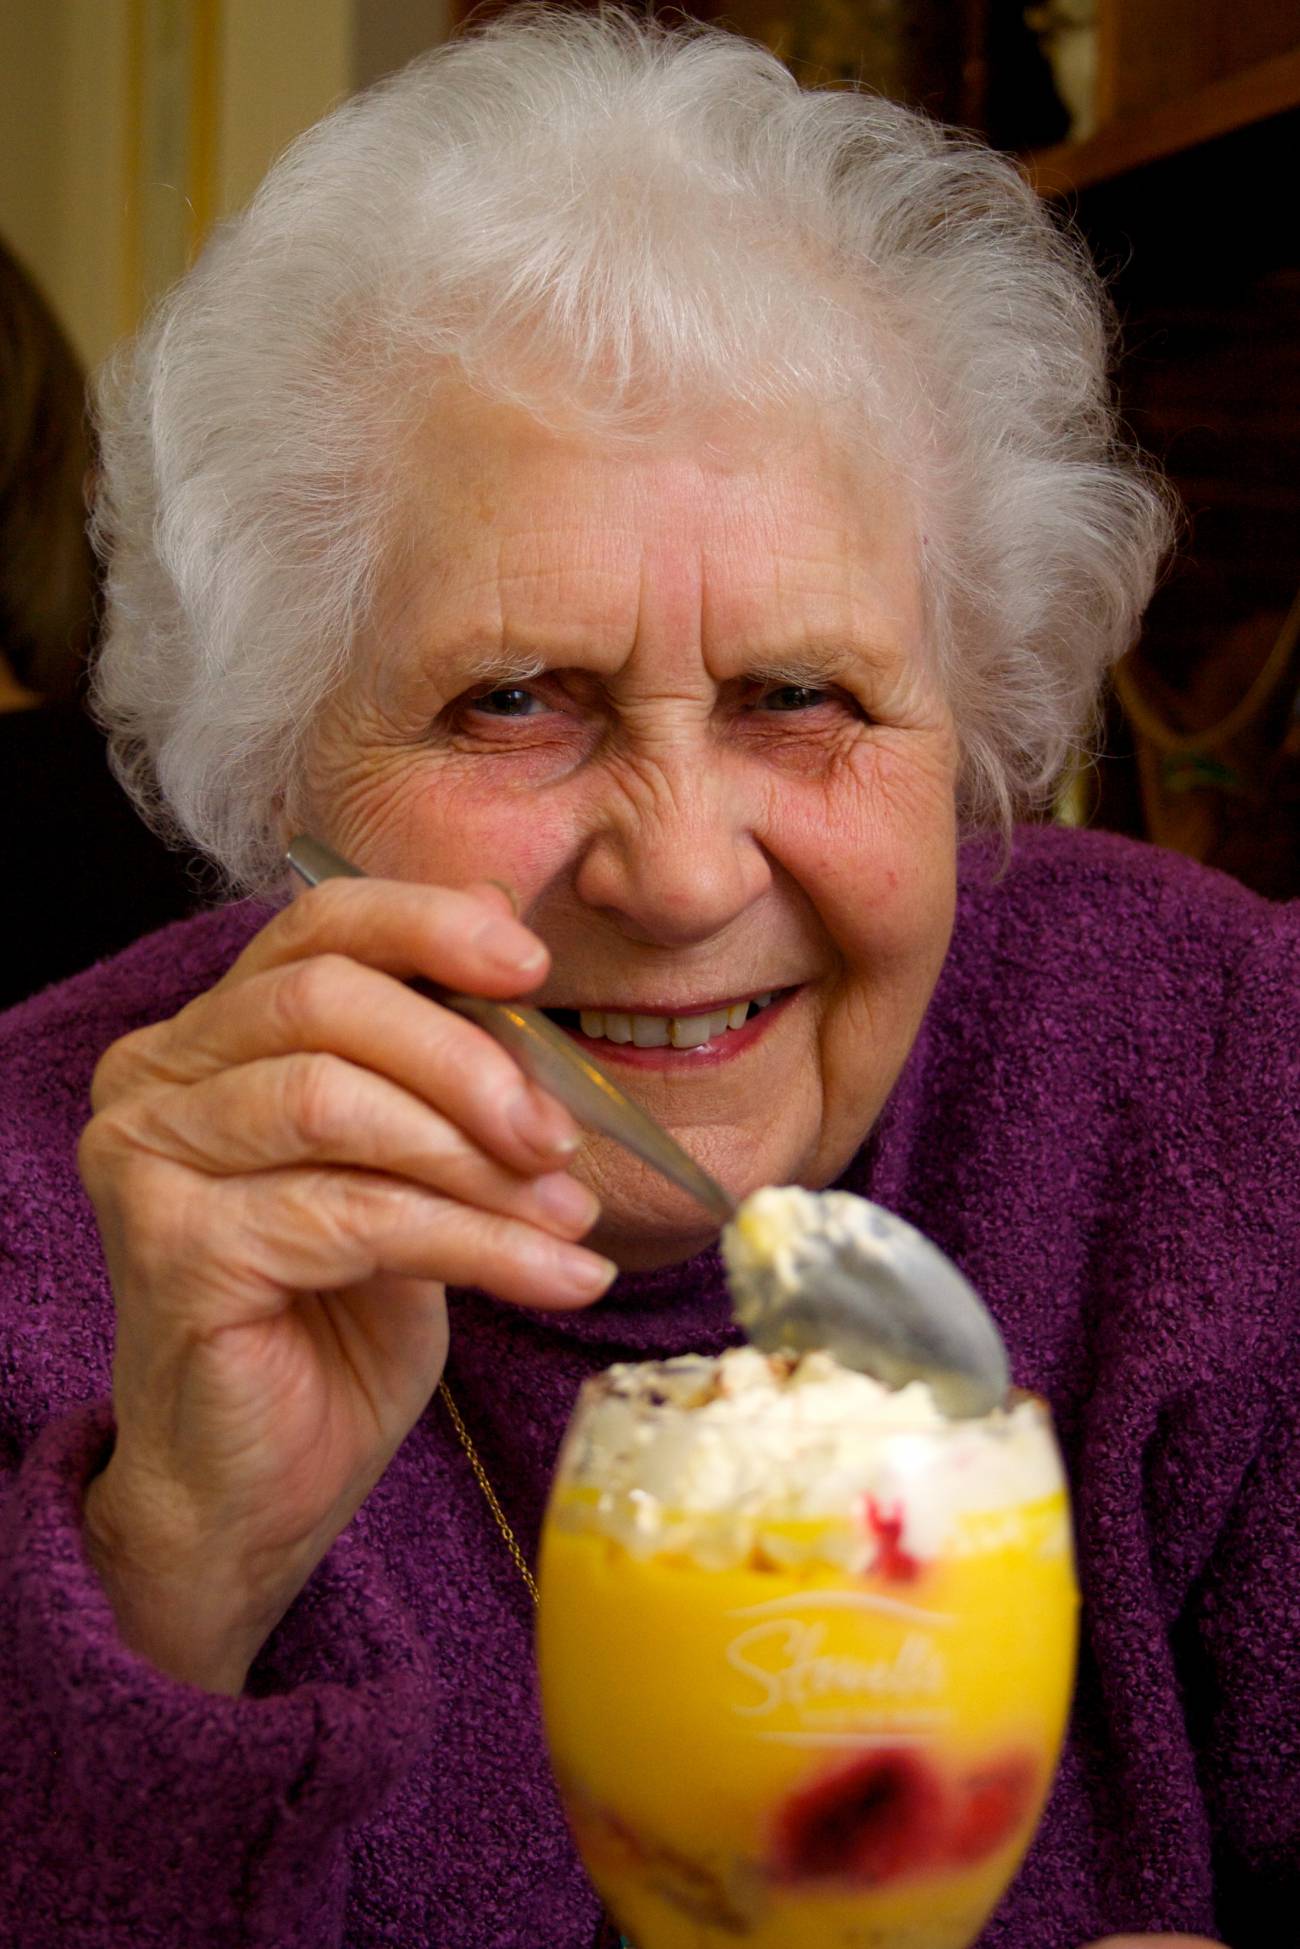 La cuarta parte de la población anciana en España tiene riesgo de desnutrición